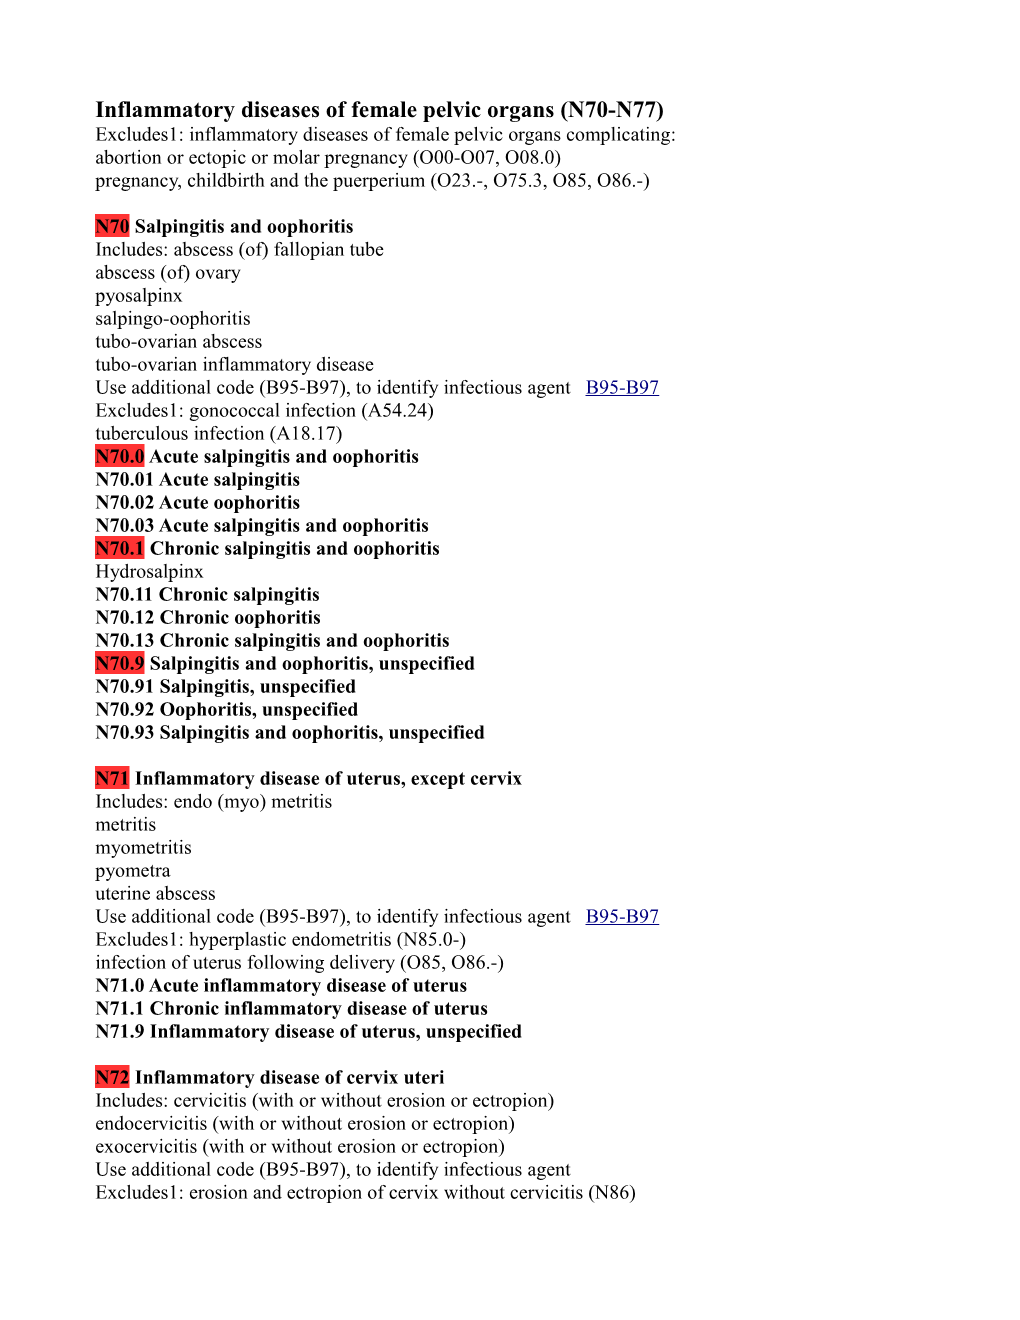 Inflammatory Diseases of Female Pelvic Organs (N70-N77)